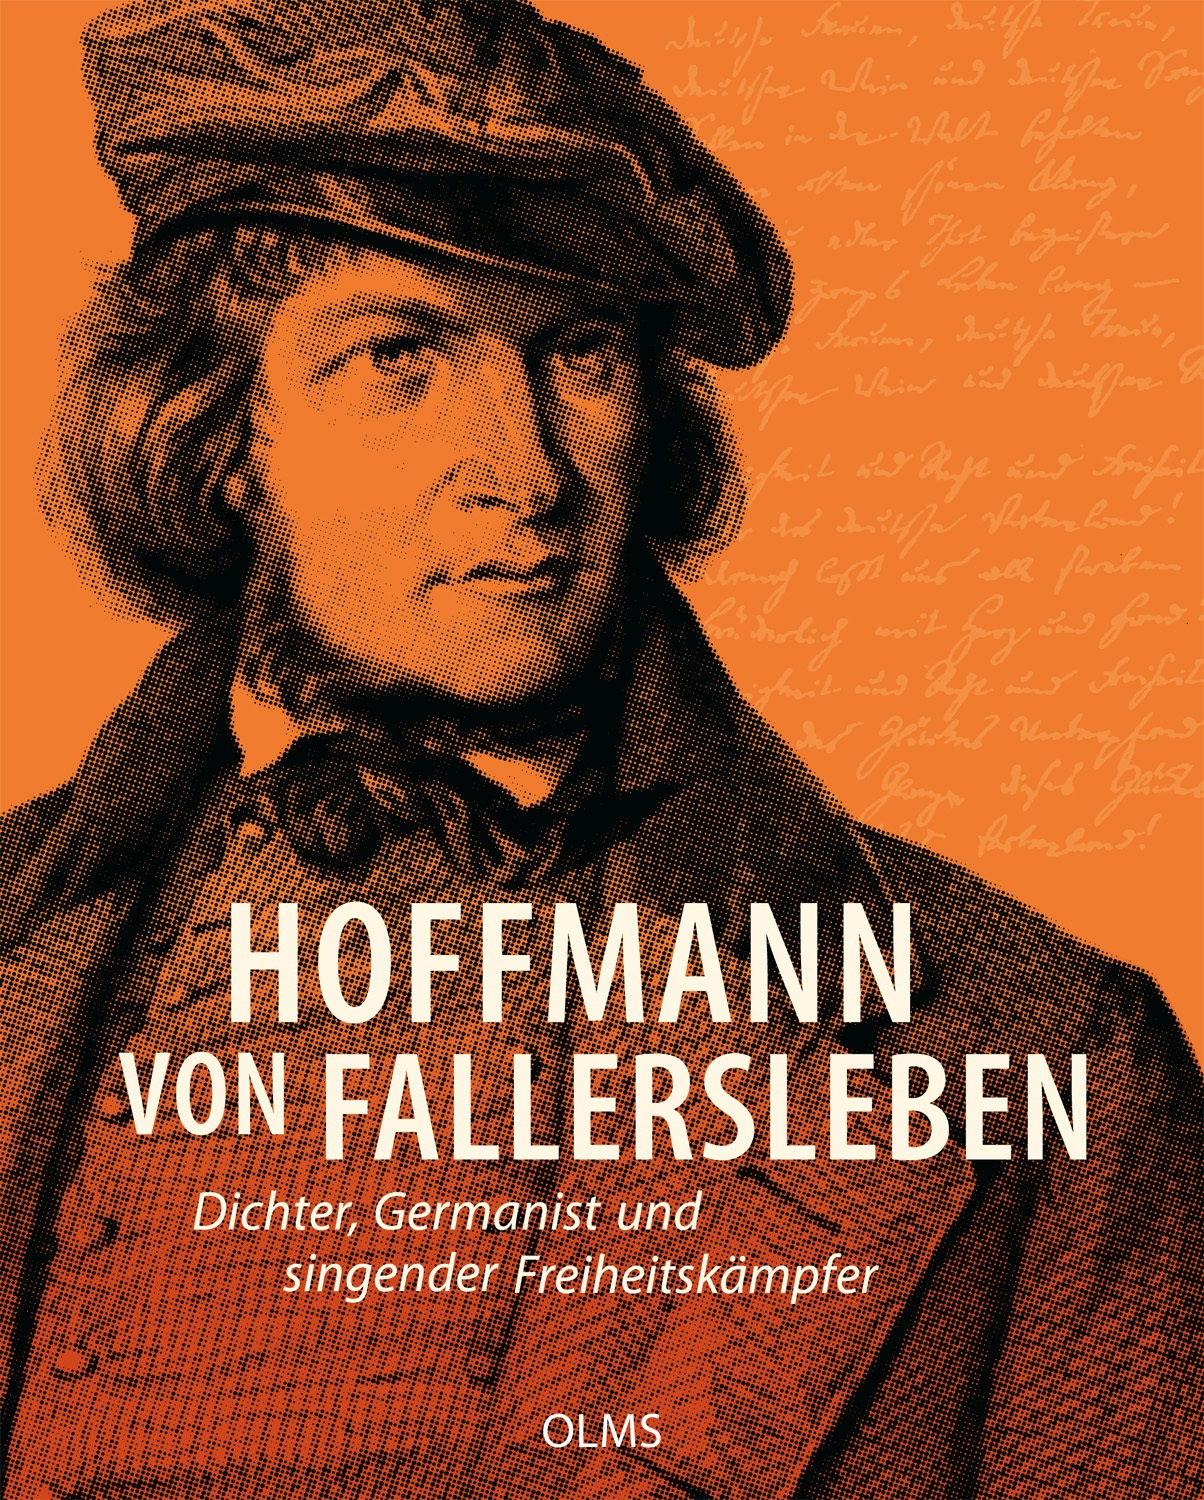 Titelseite des Buches "Hoffmann von Fallersleben - Dichter, Germanist und singender Freiheitskämpfer